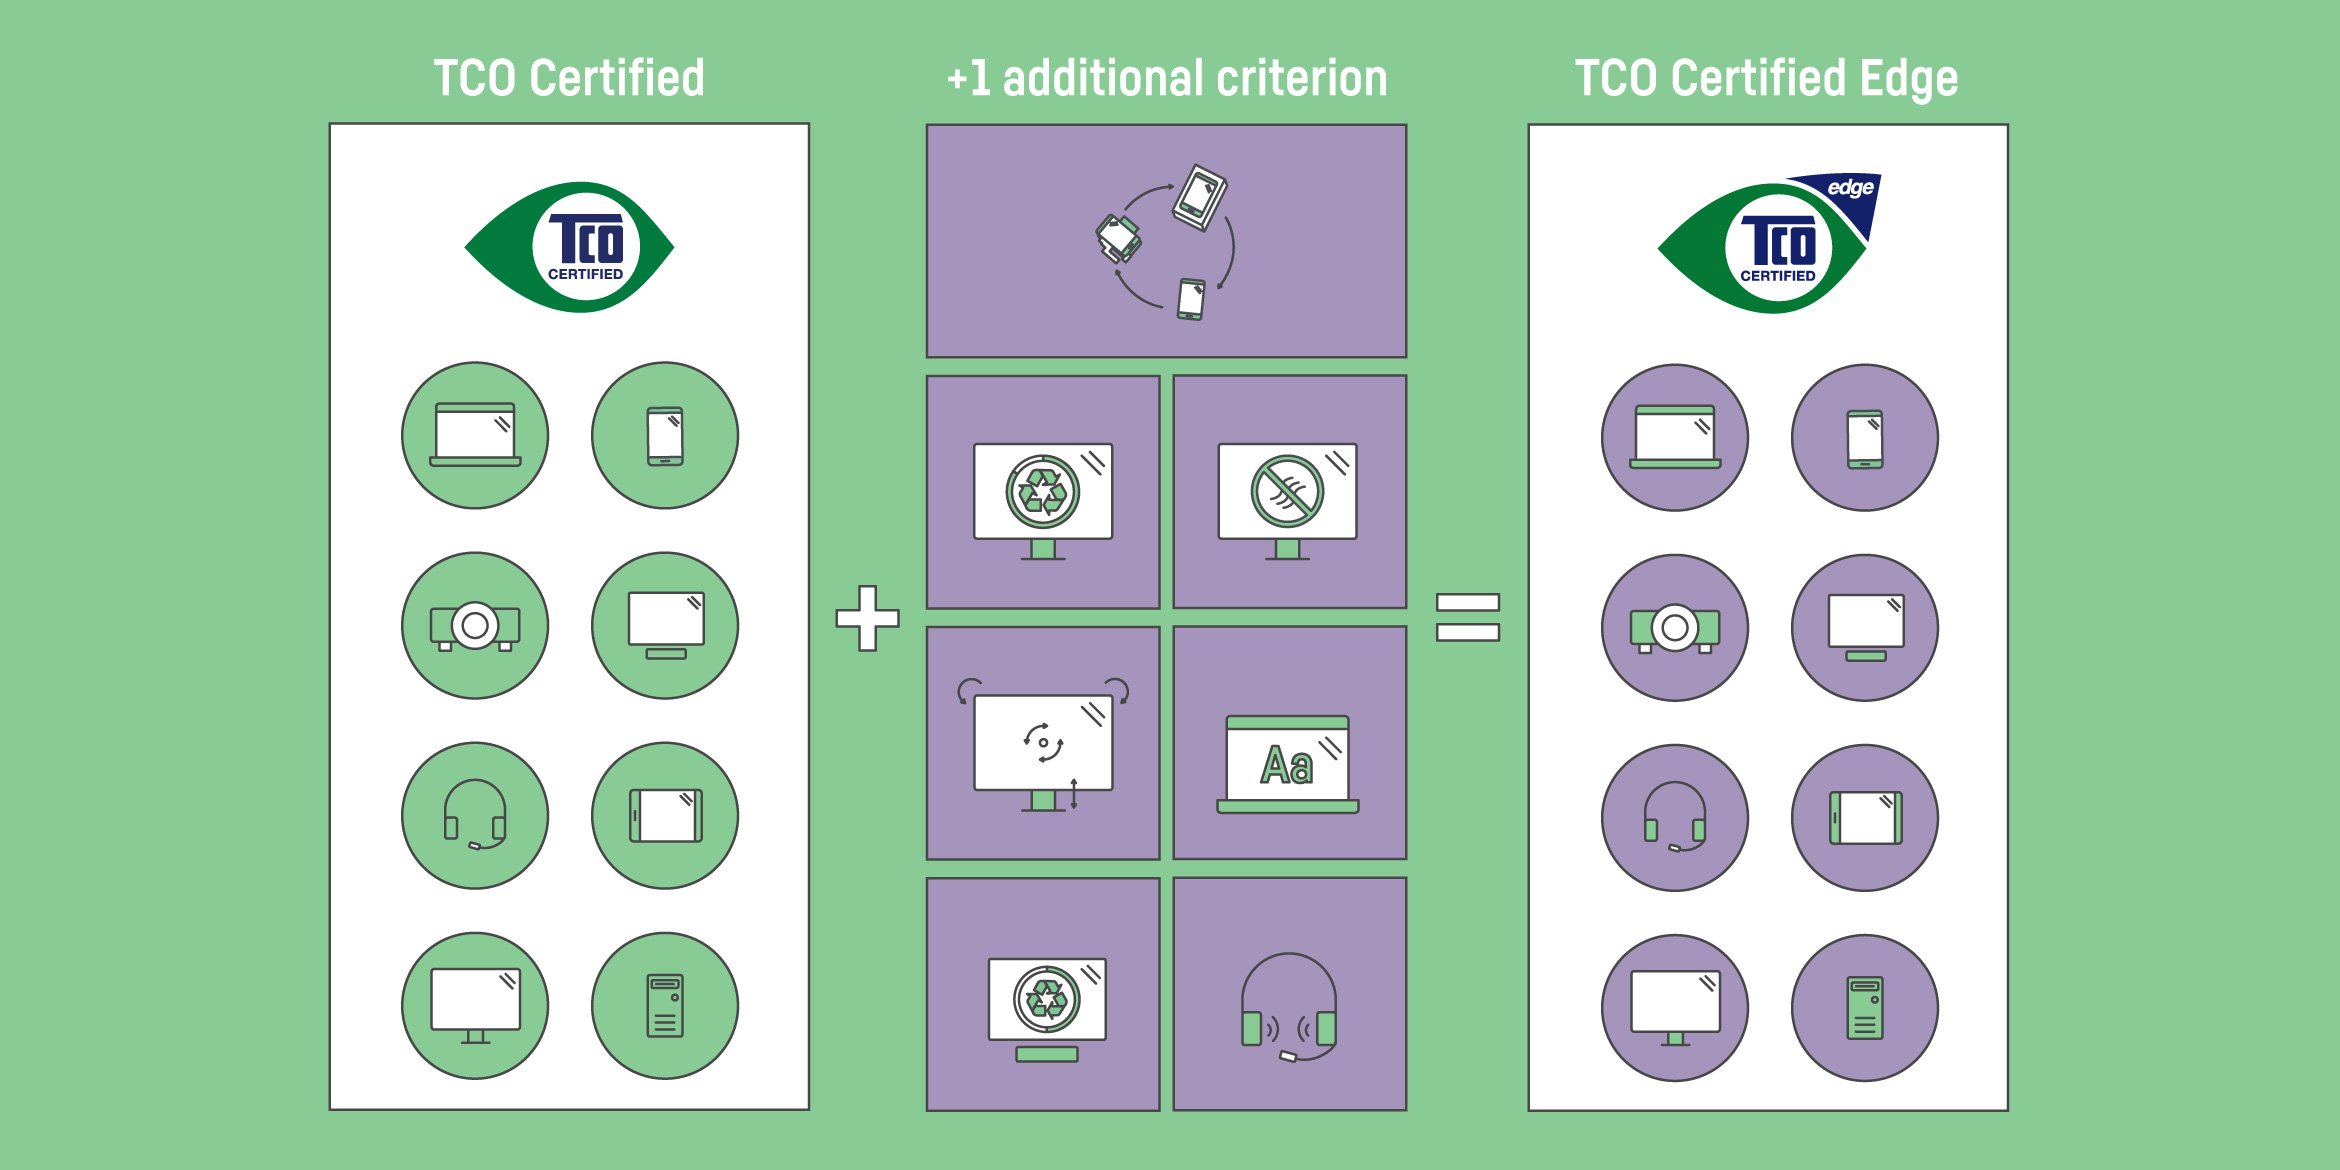 TCO Certified Edge - un ulteriore passo avanti verso prodotti IT sostenibili